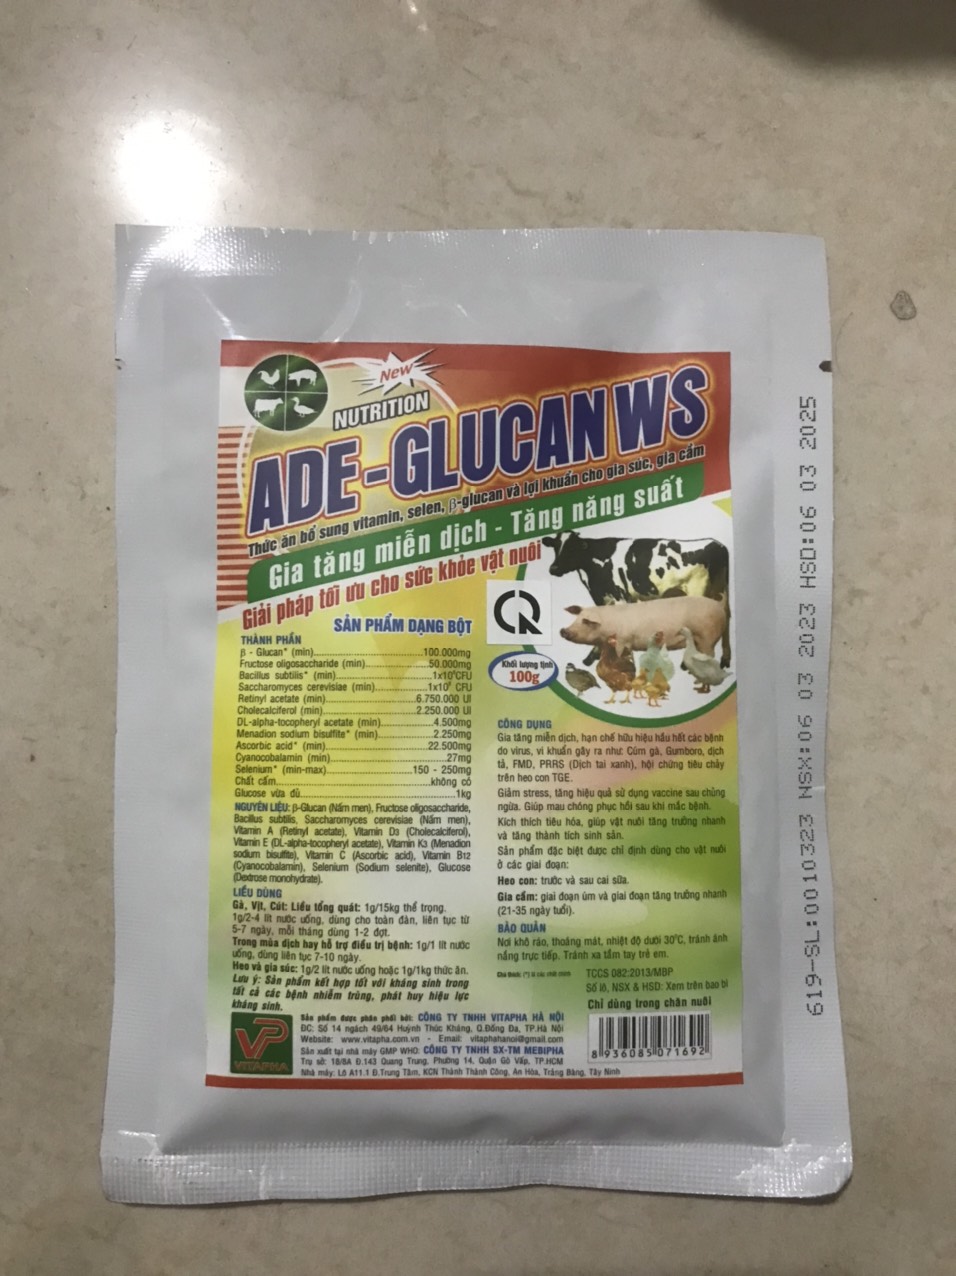 ADE glucan (100g), bổ sung glucan, selen, vitamin, lợi khuẩn cho chó, mèo, lợn, gà, trâu, bò,...